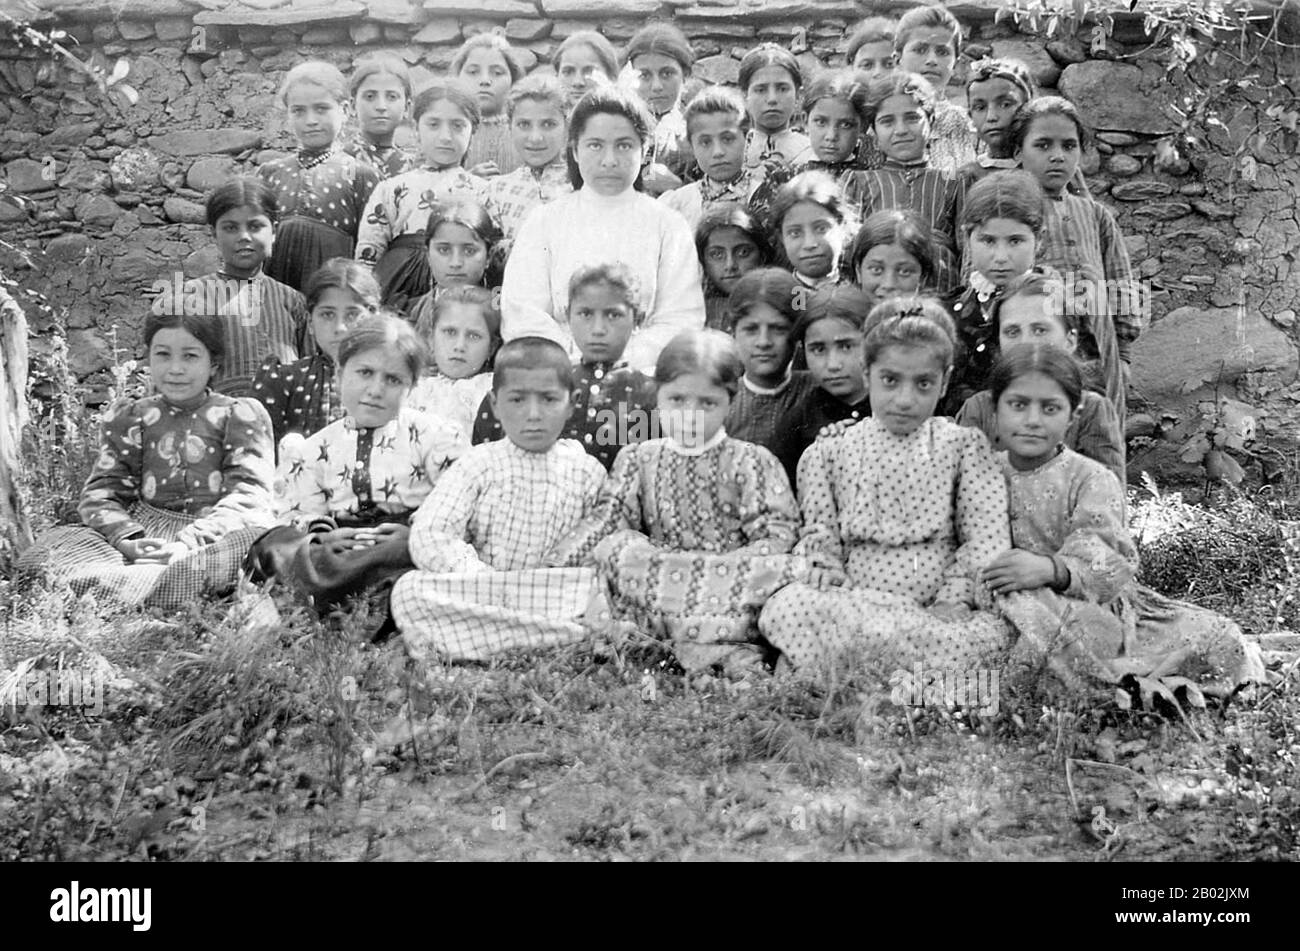 Le génocide arménien fait référence à la destruction délibérée et systématique de la population arménienne de l'Empire ottoman pendant et juste après la première Guerre mondiale. Il a été mis en œuvre par des massacres et des déportations en gros, avec les déportations composées de marches forcées dans des conditions conçues pour conduire à la mort des déportés. Le nombre total de décès arméniens qui en résultent est généralement estimé entre un et un demi-million. D'autres groupes ethniques ont été attaqués de la même manière par l'Empire ottoman pendant cette période, y compris les Assyriens et les Grecs, et certains érudits sont consistés Banque D'Images